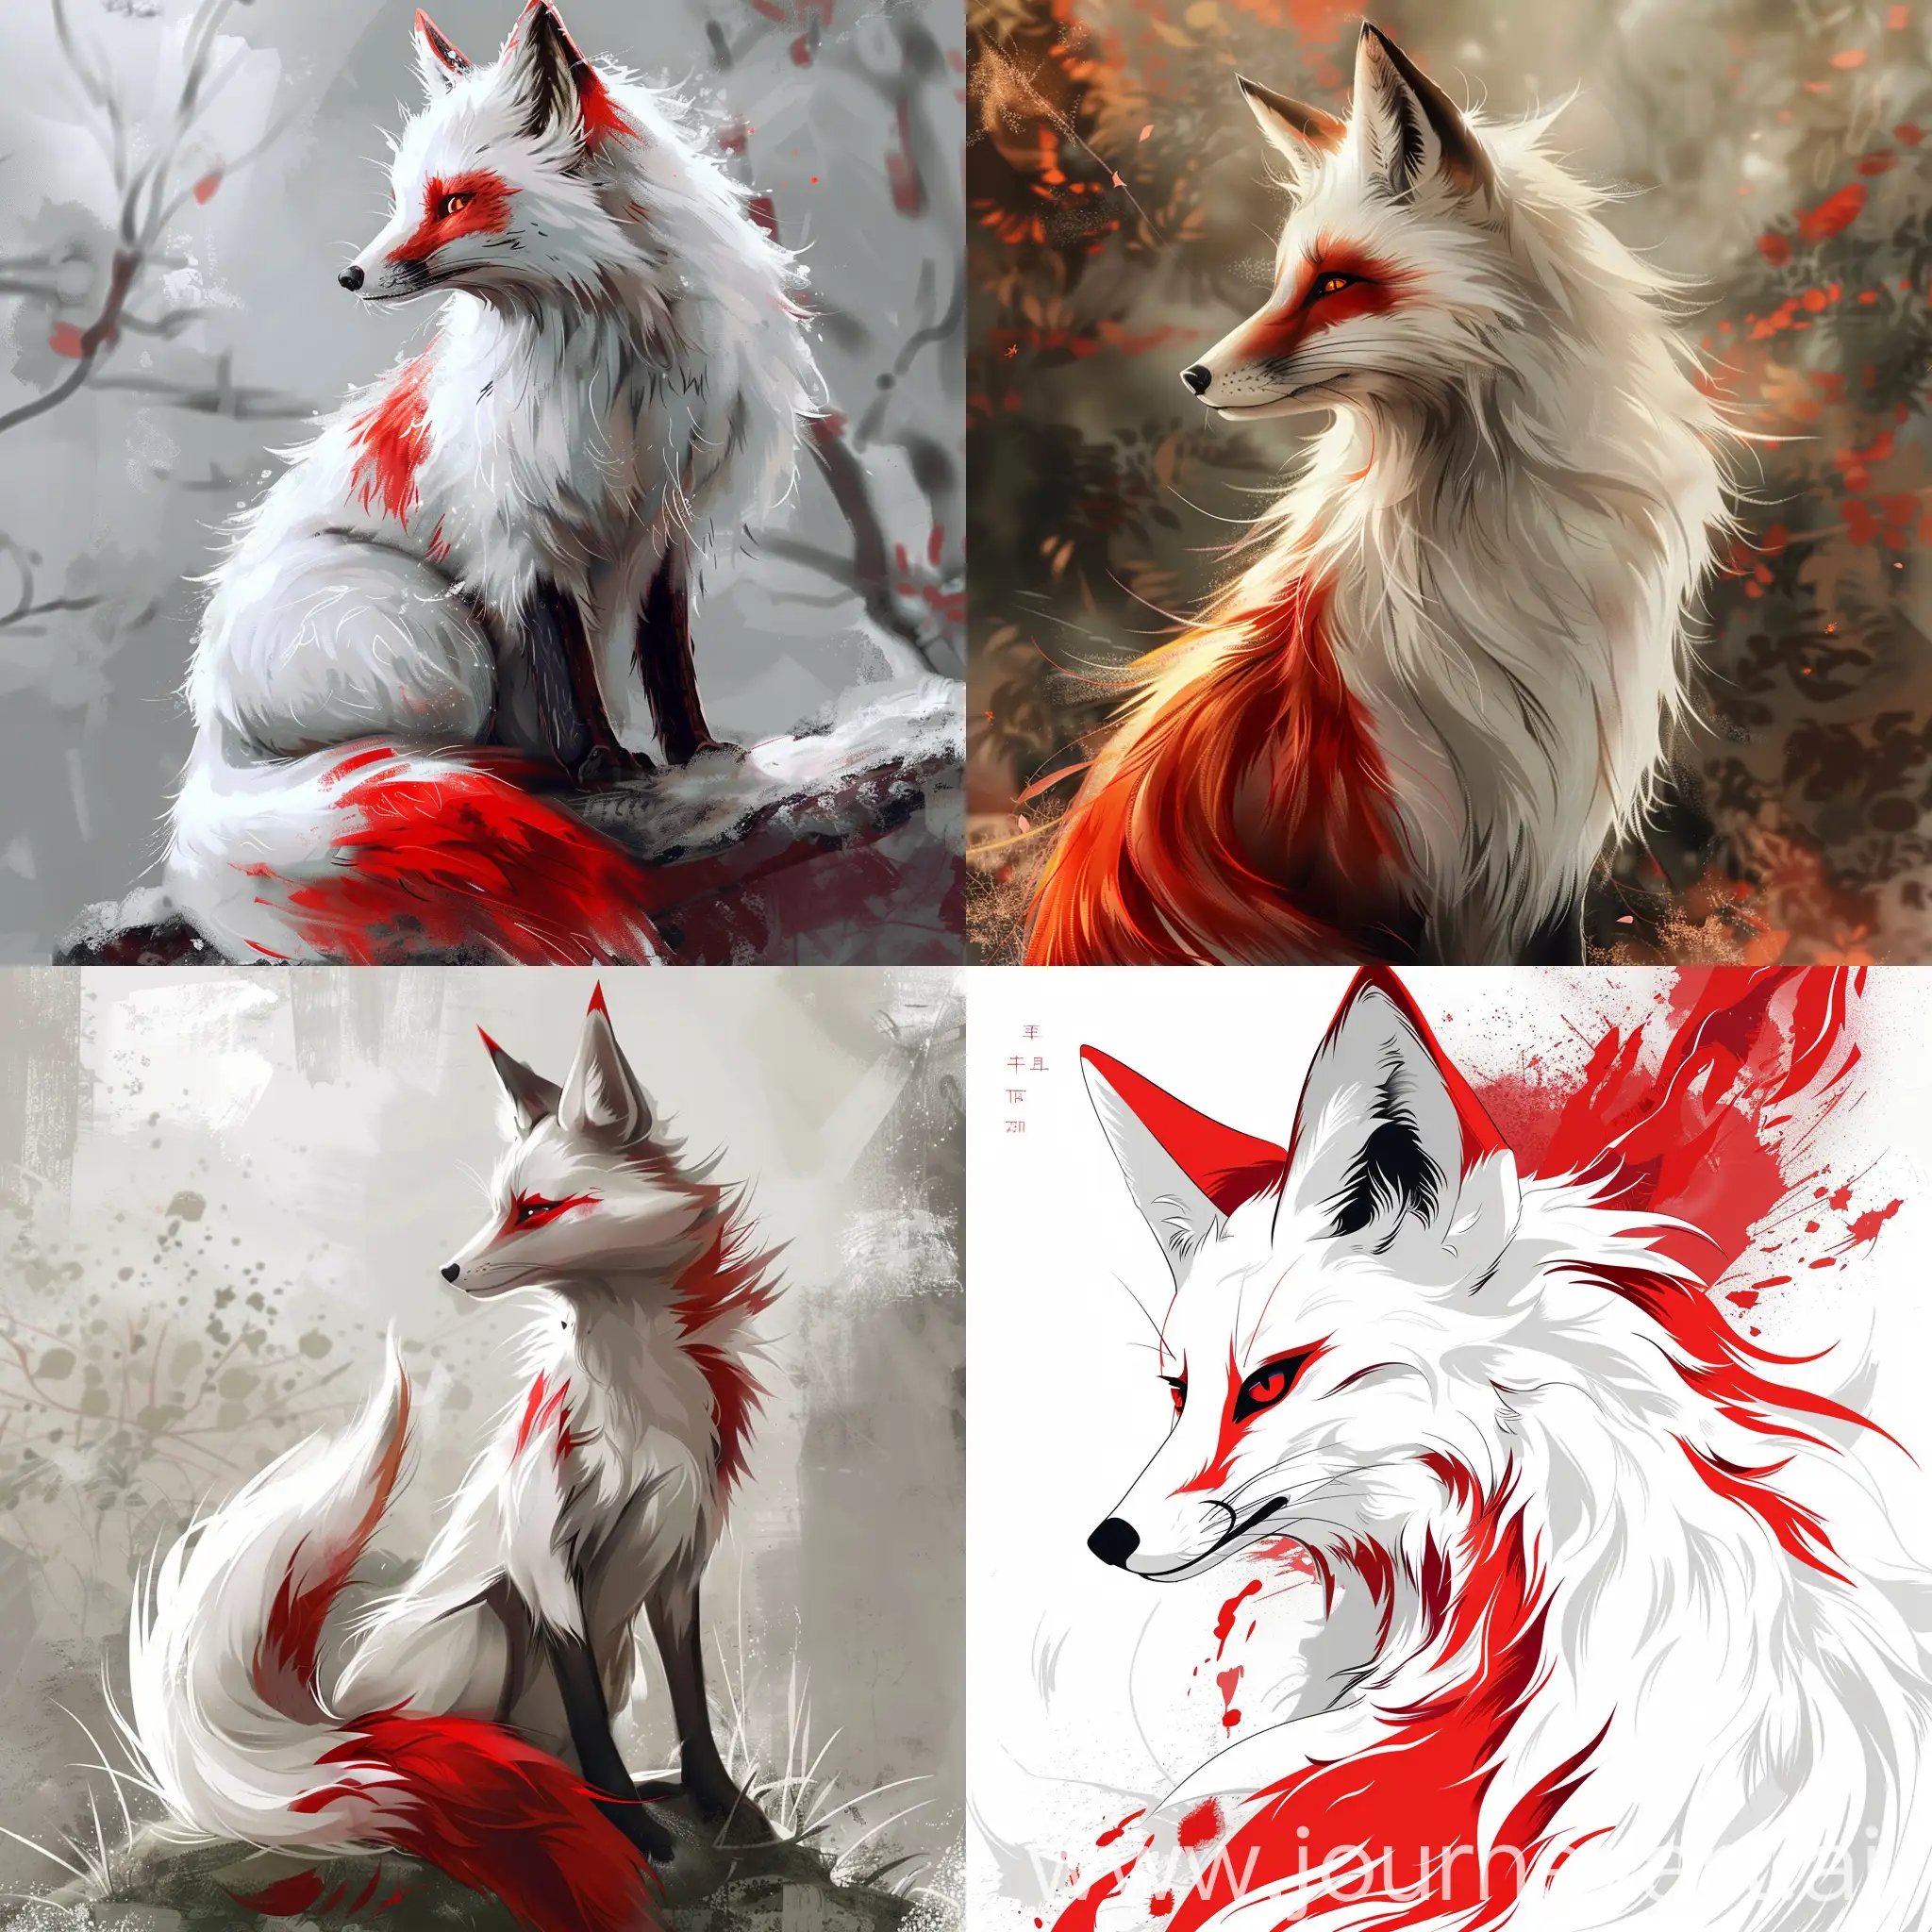 kitsune blanc et rouge type anime jaopnais
